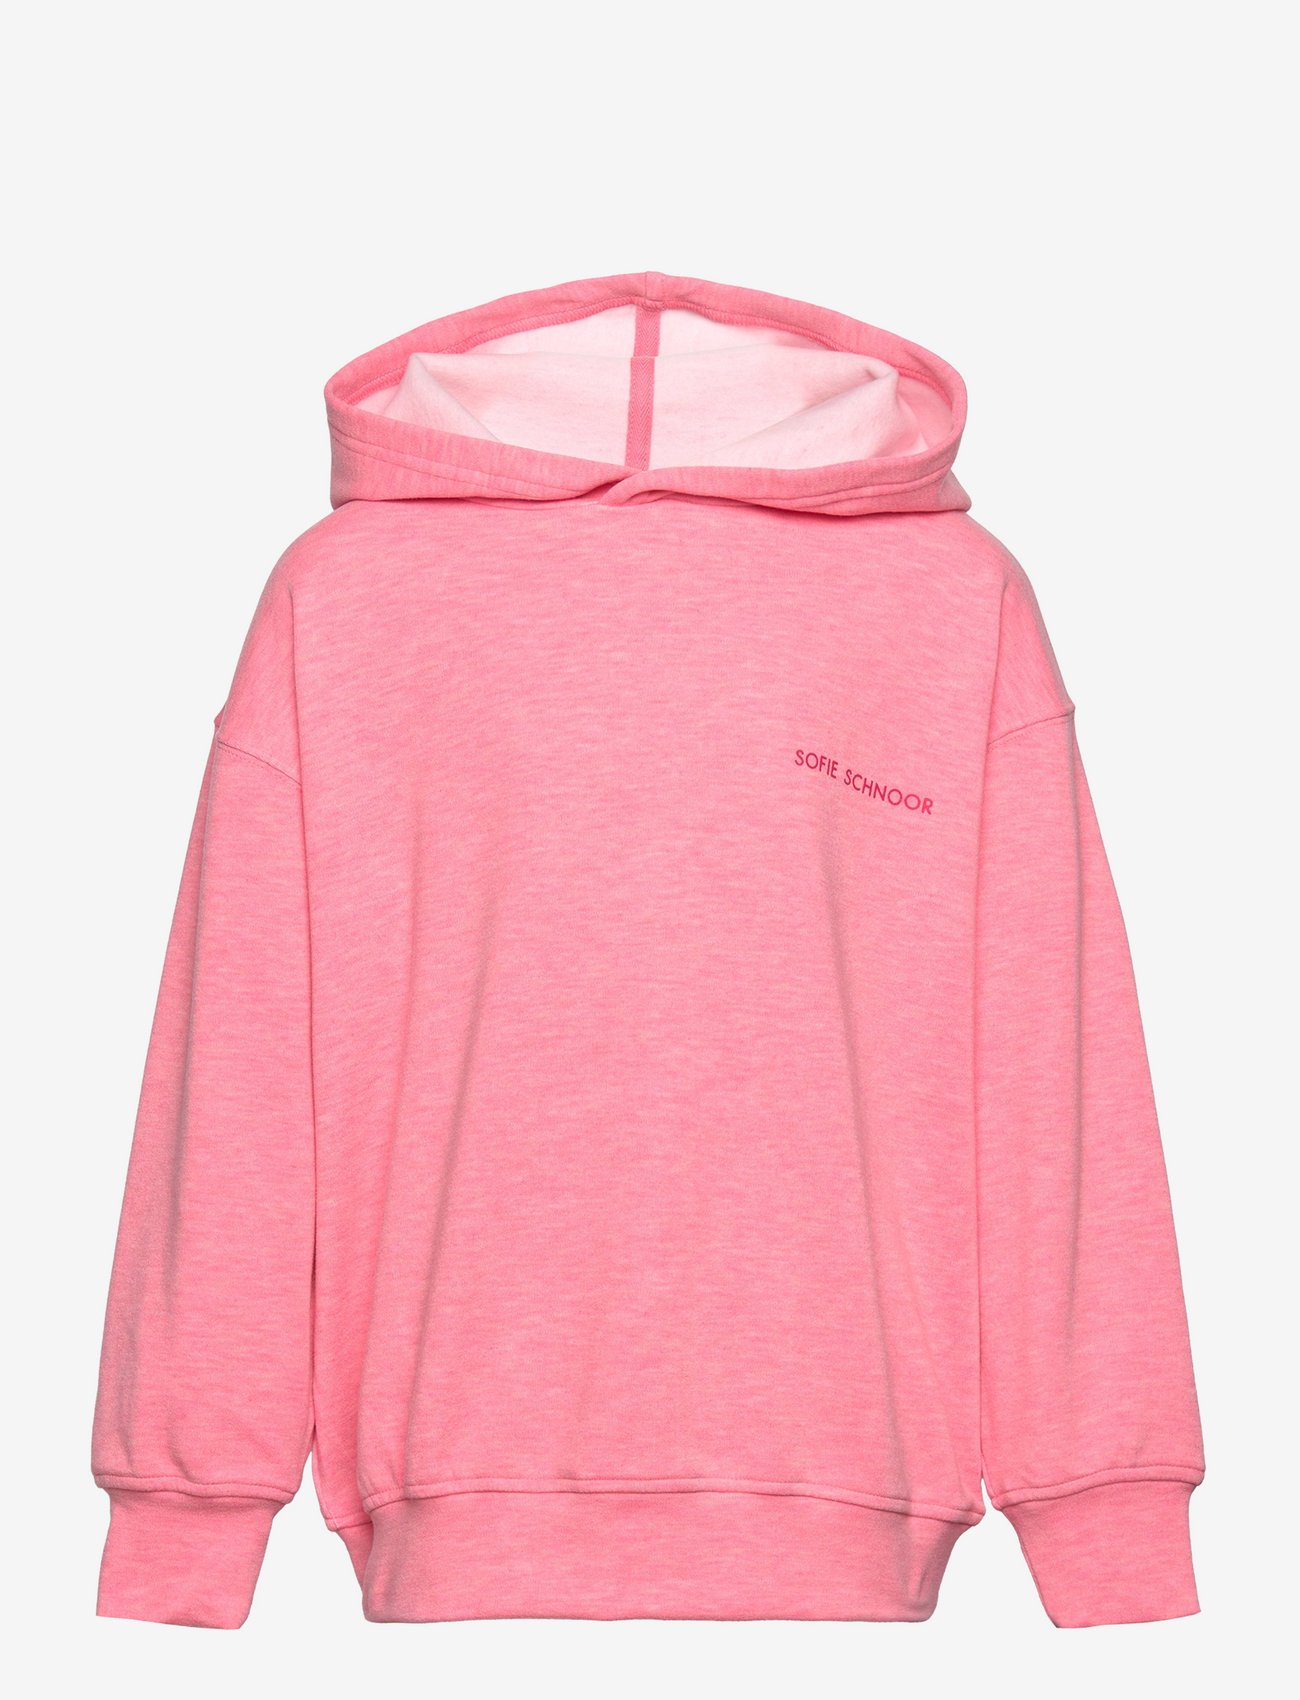 Sofie Schnoor Young - Sweatshirt - džemperiai su gobtuvu - l pink - 0